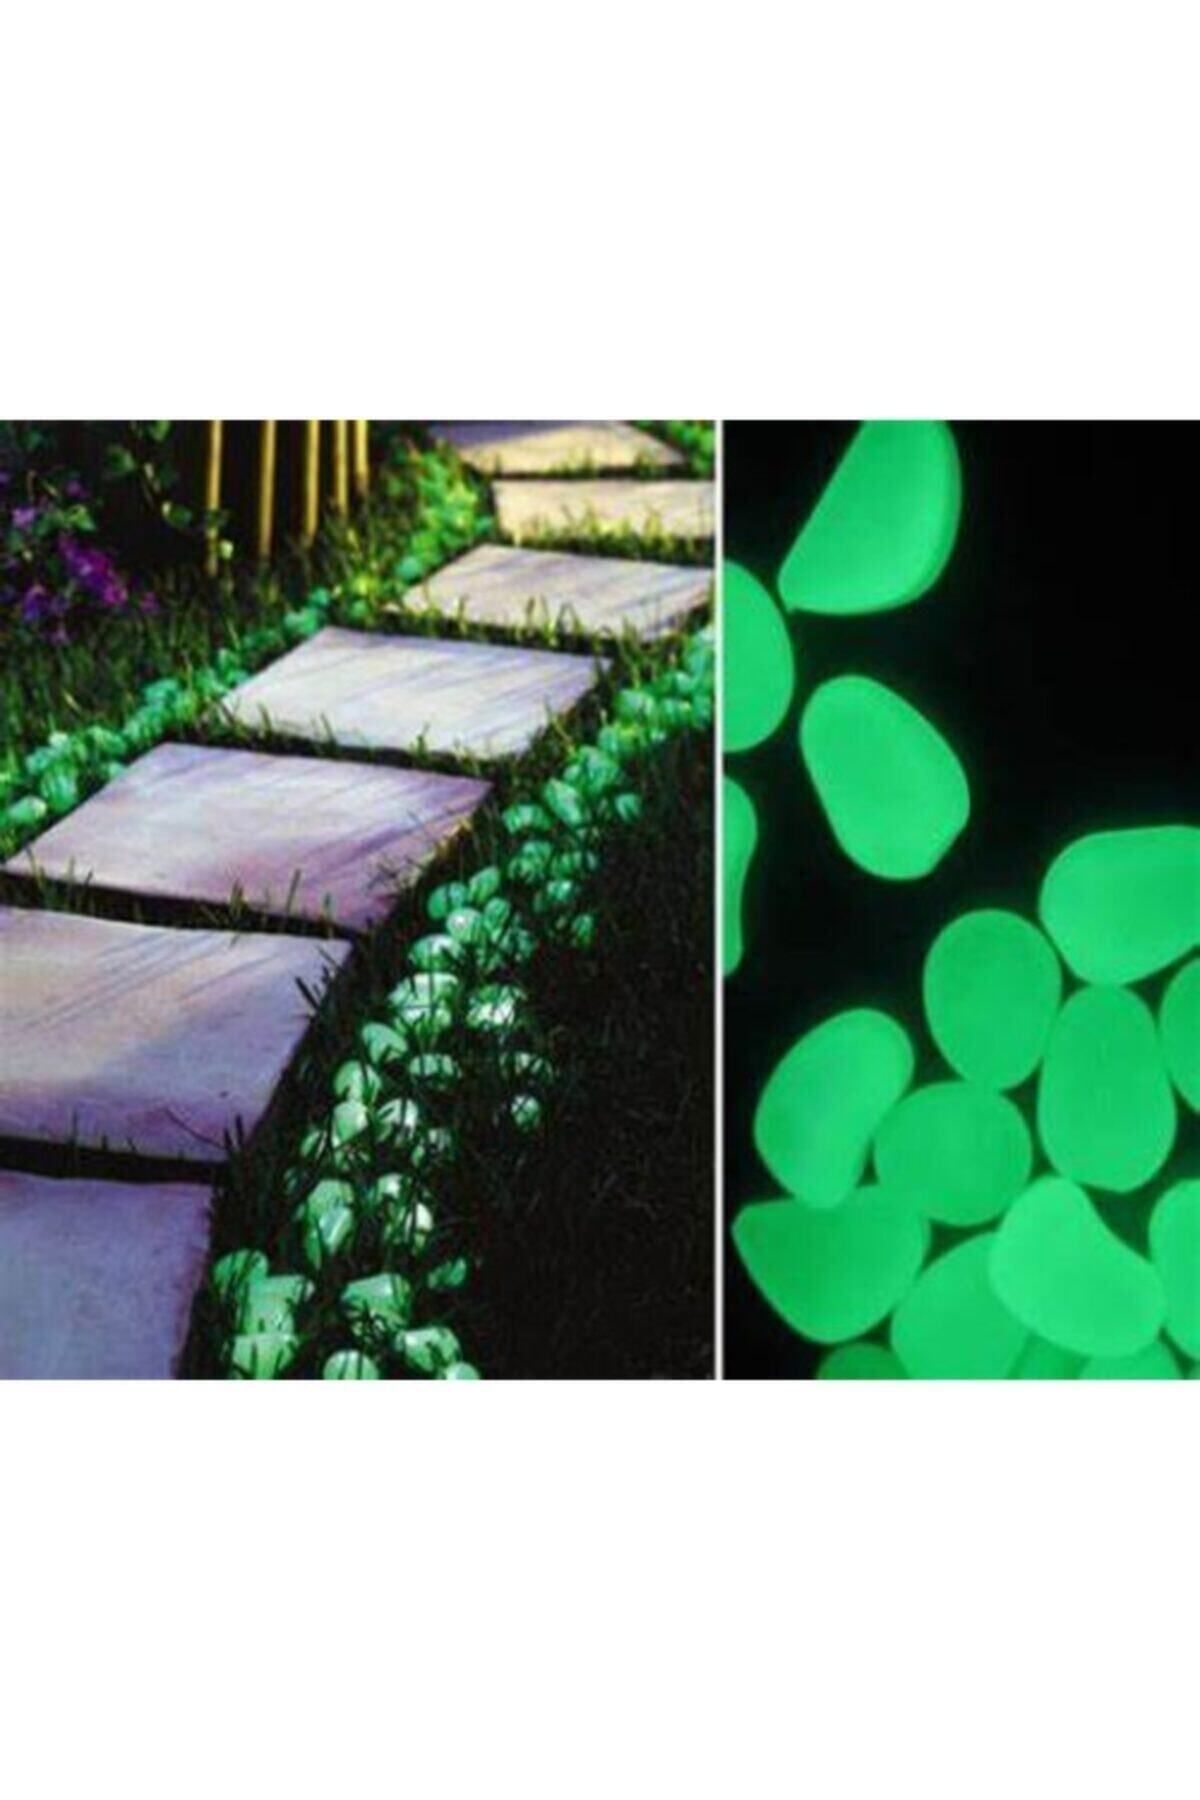 Bahçem 50 Adet Fosforlu Çakıl Taşı Gece Parlayan Fosforlu Çakıl Taşları Akvaryum Dekoratif Fosfor